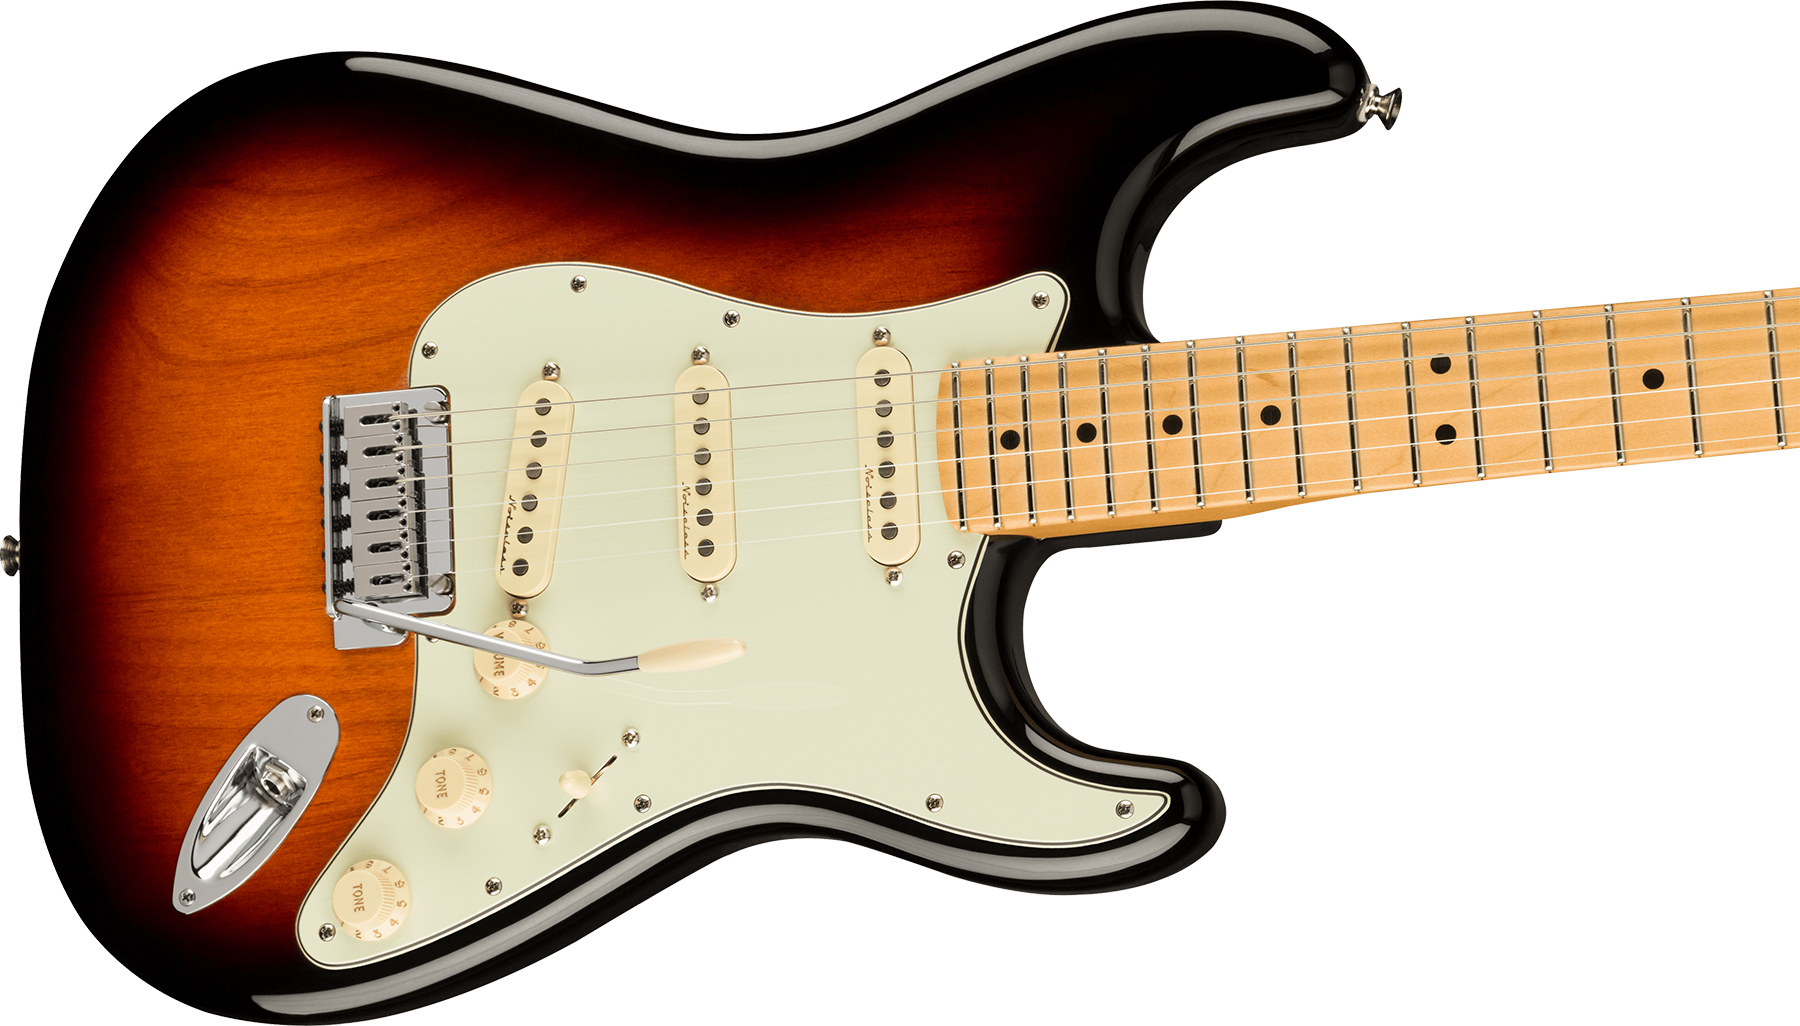 Fender Strat Player Plus Mex 3s Trem Mn - 3-color Sunburst - E-Gitarre in Str-Form - Variation 2